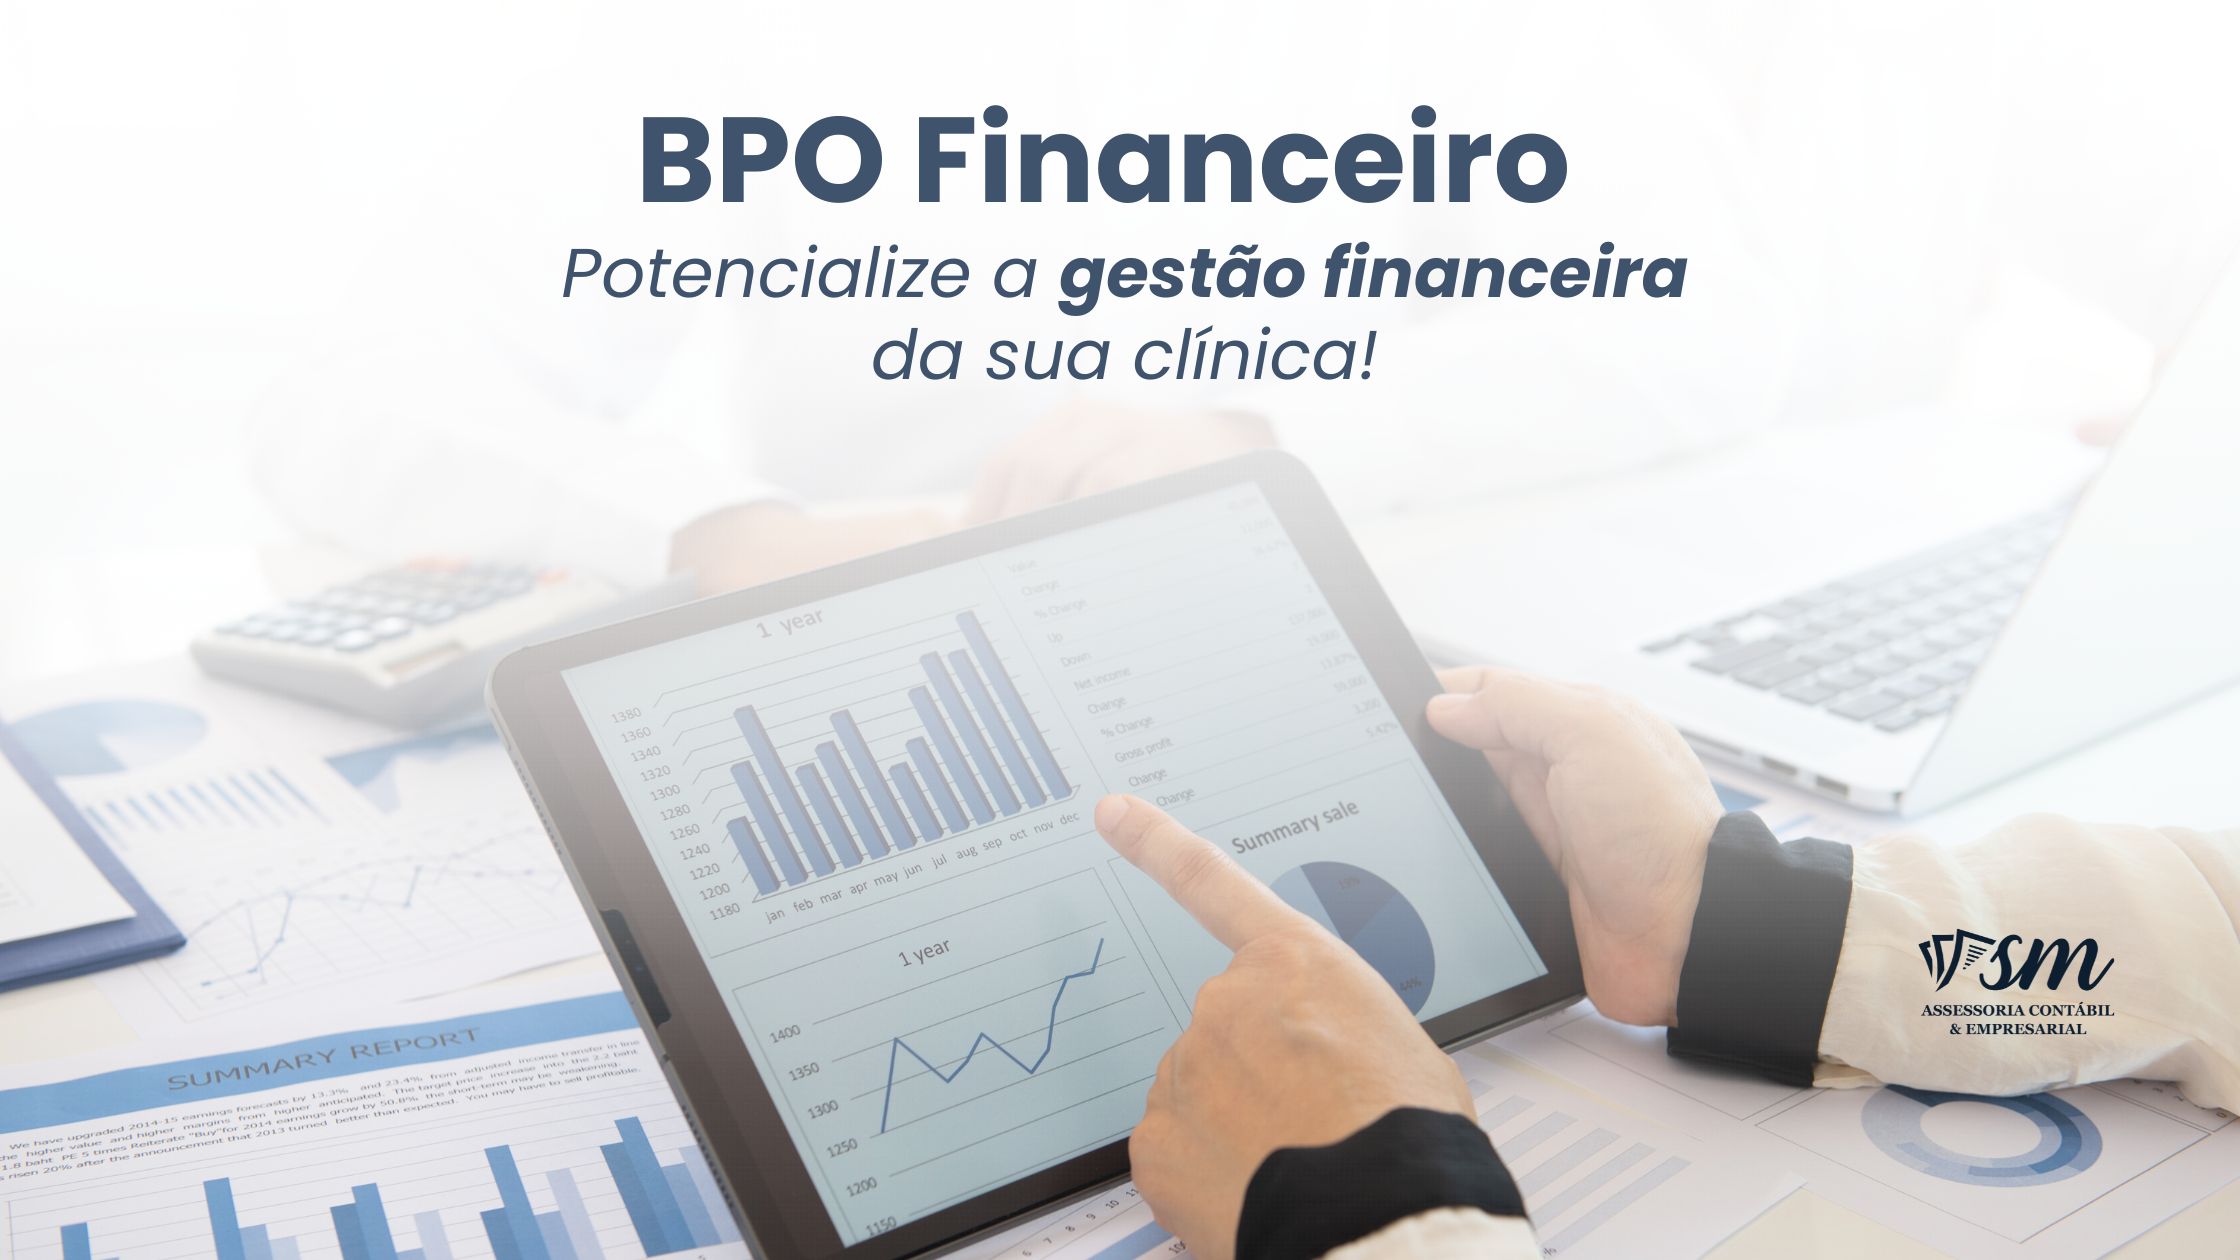 BPO Financeiro – Potencialize A Gestão Financeira Da Sua Clínica